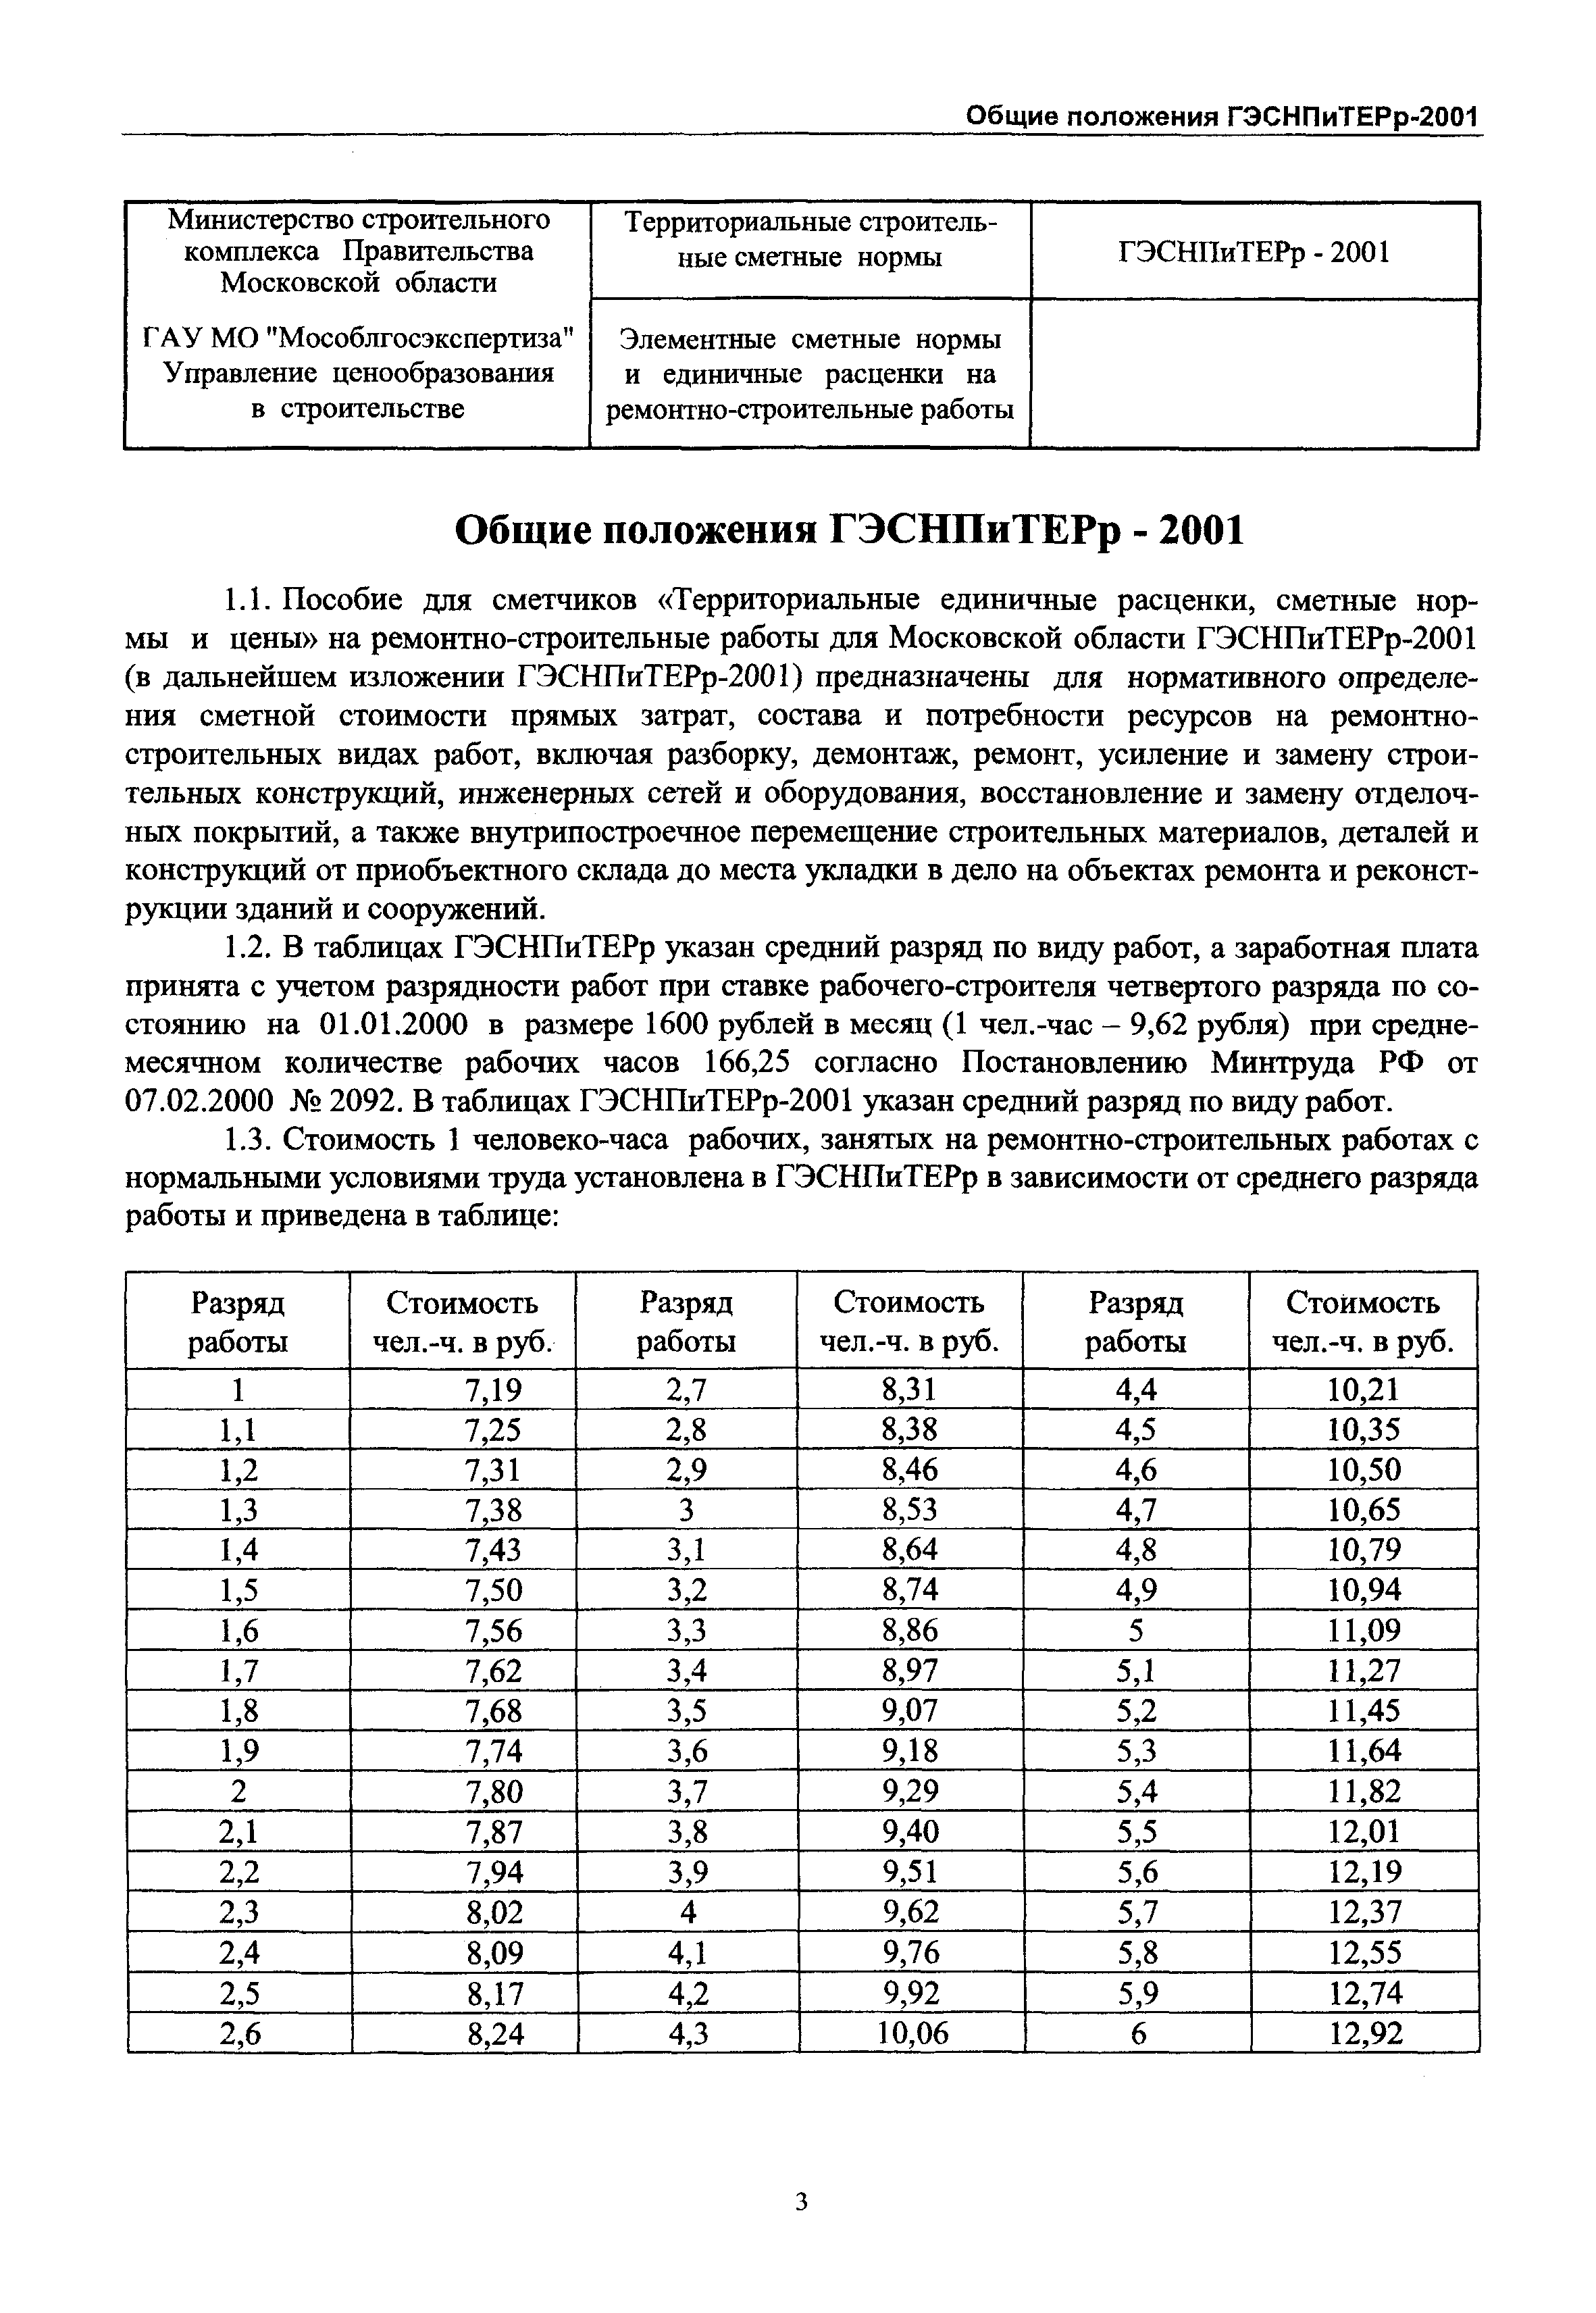 ГЭСНПиТЕРр 2001-55 Московской области